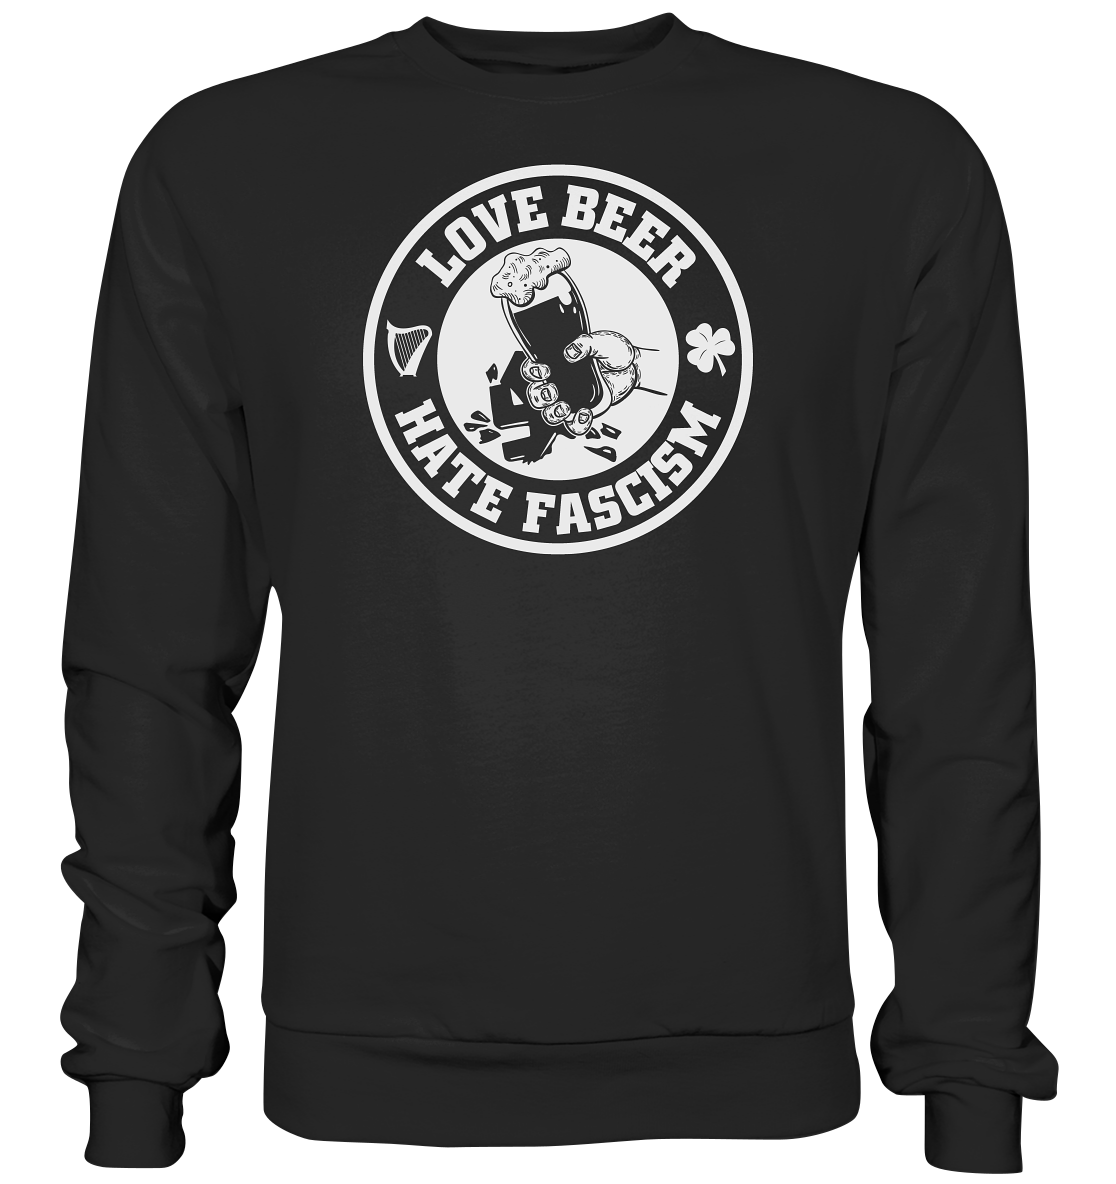 Love Beer - Hate Fascism - Basic Sweatshirt